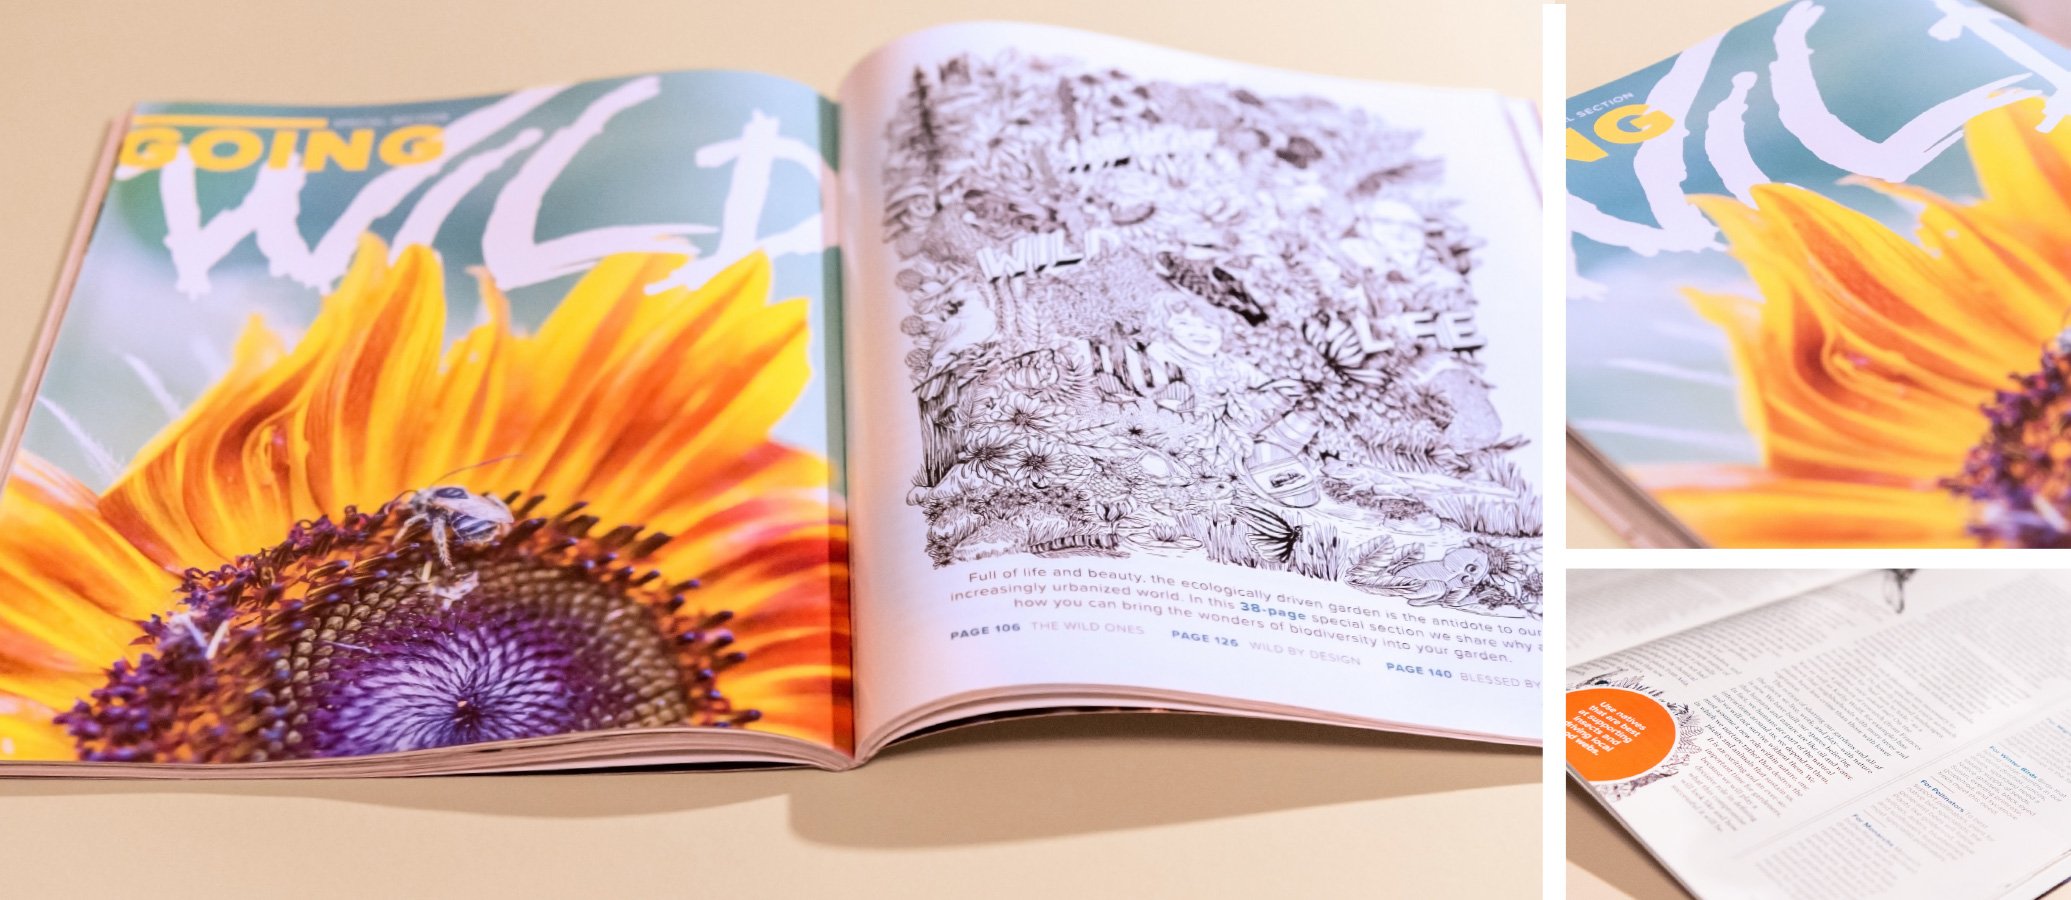 Going Wild - Garden Design Magazine